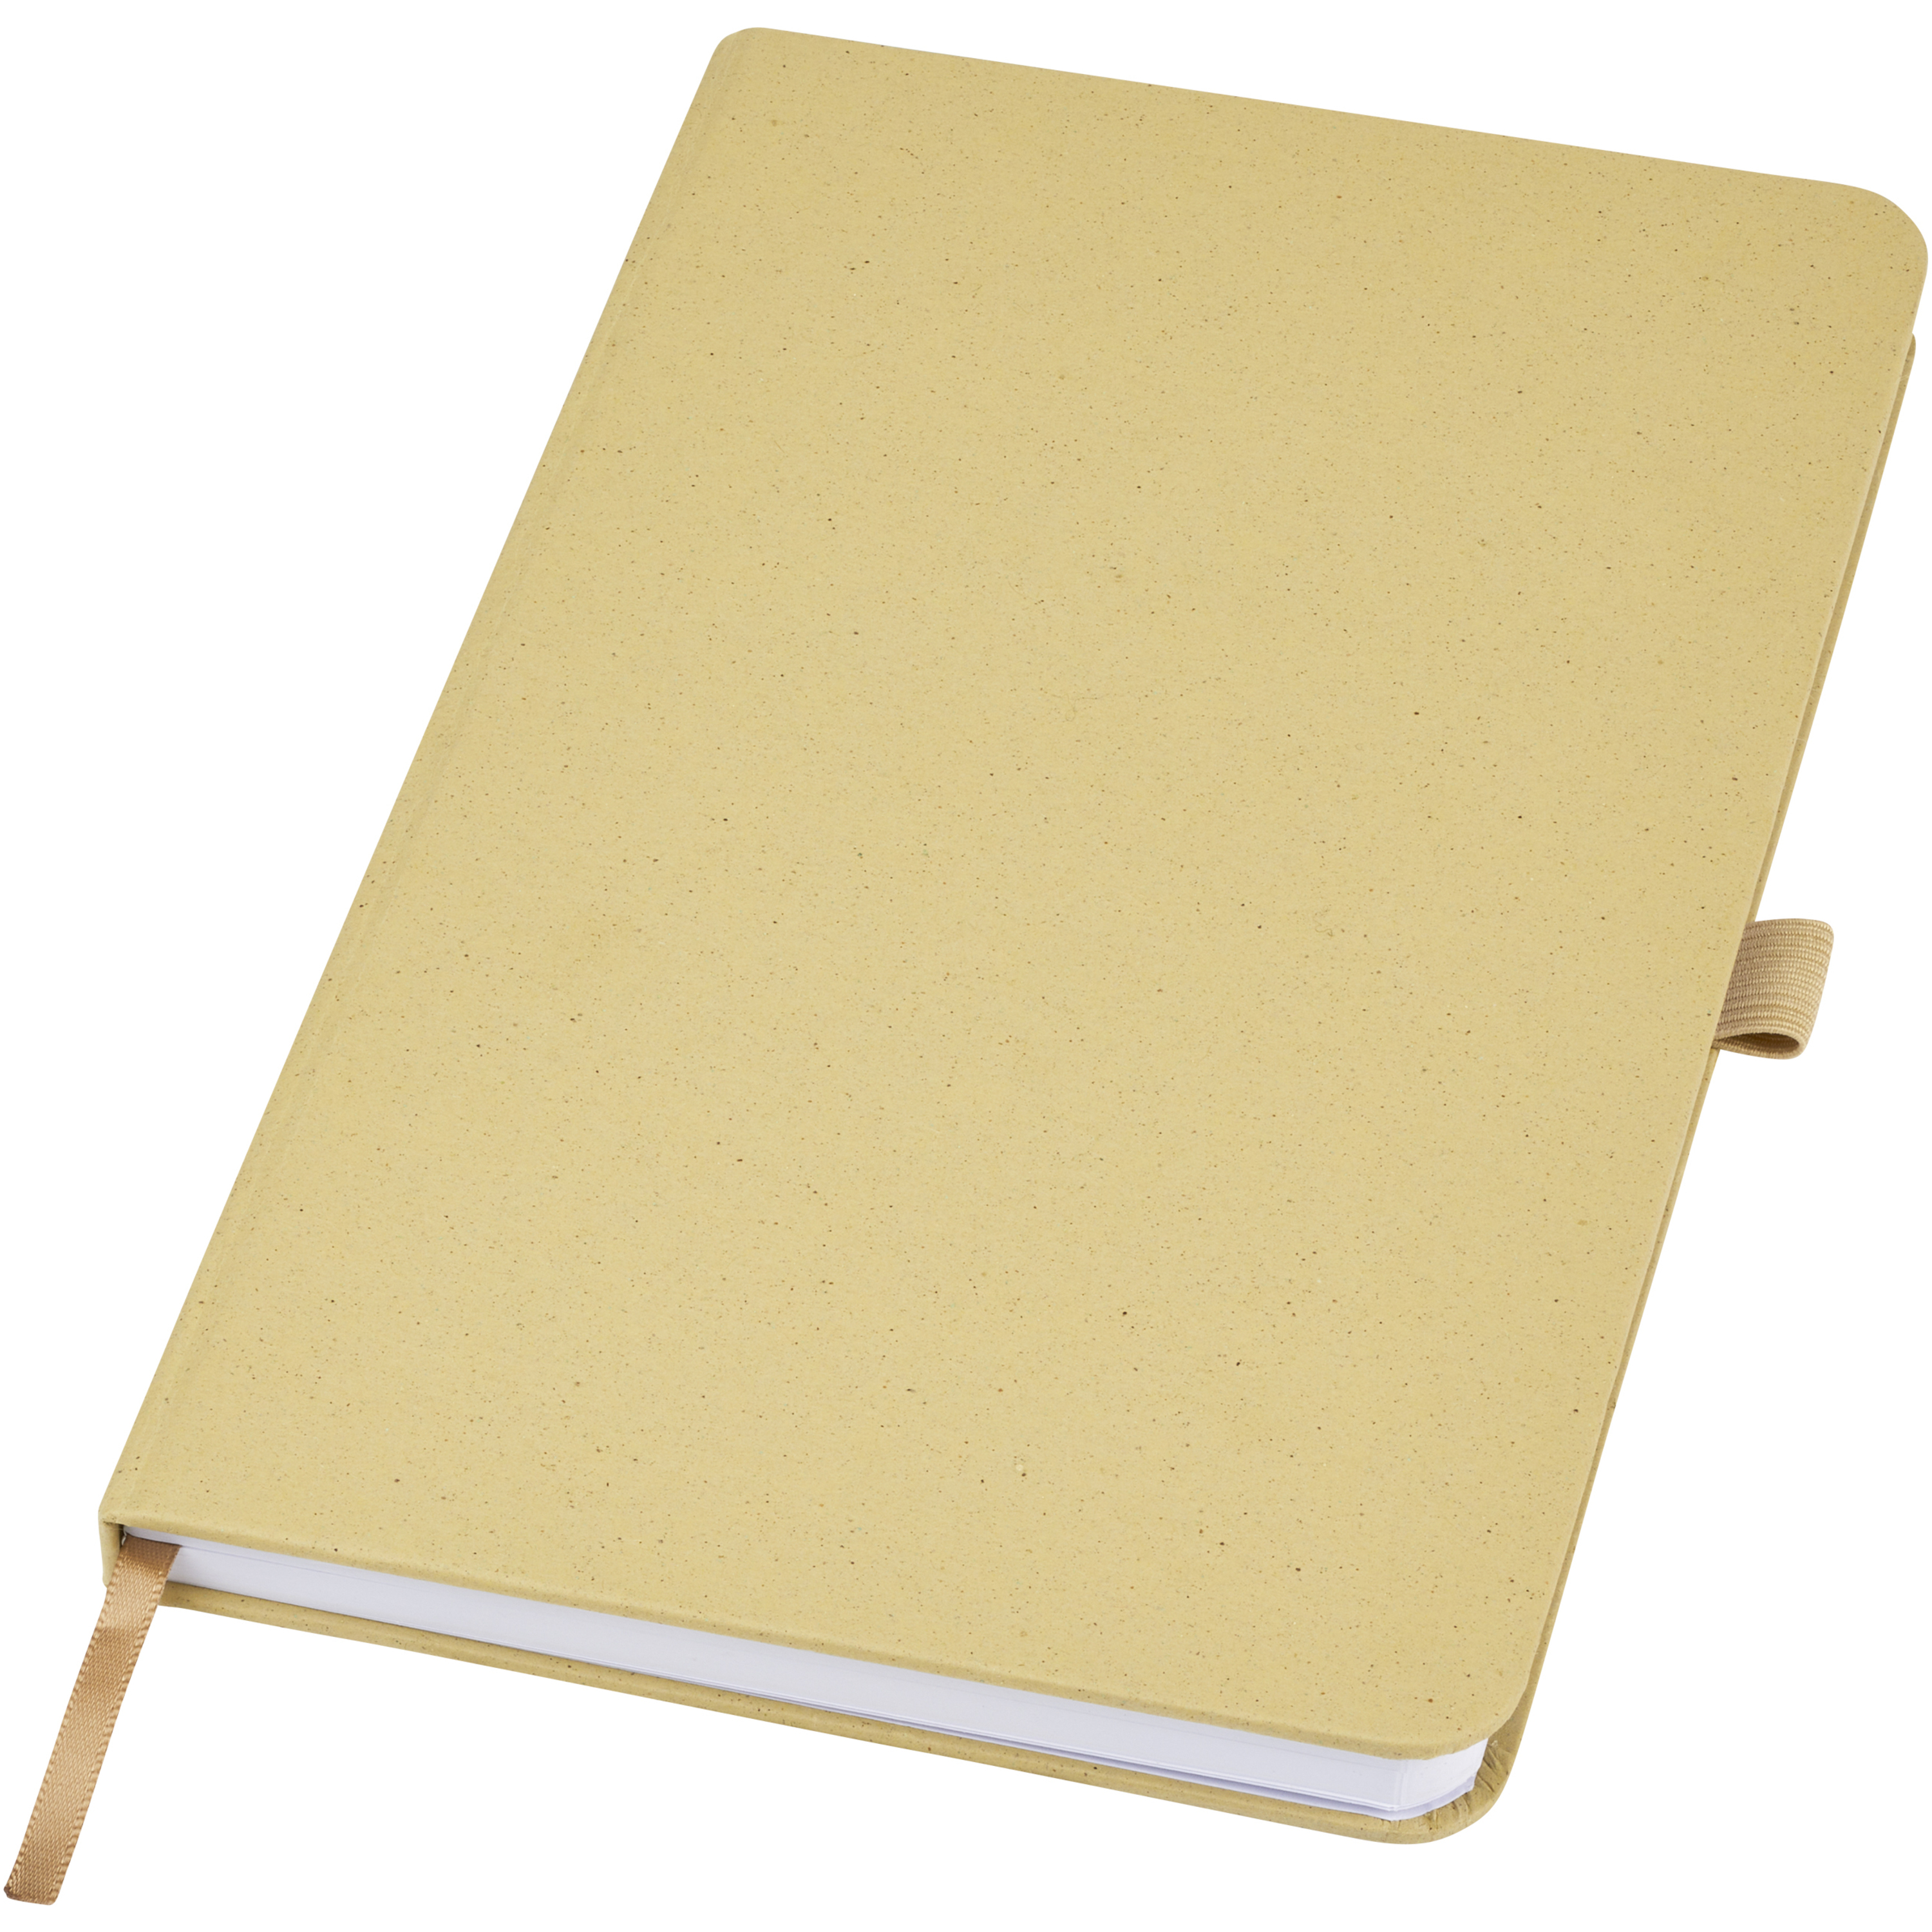 Fabianna crush paper hard cover notebook